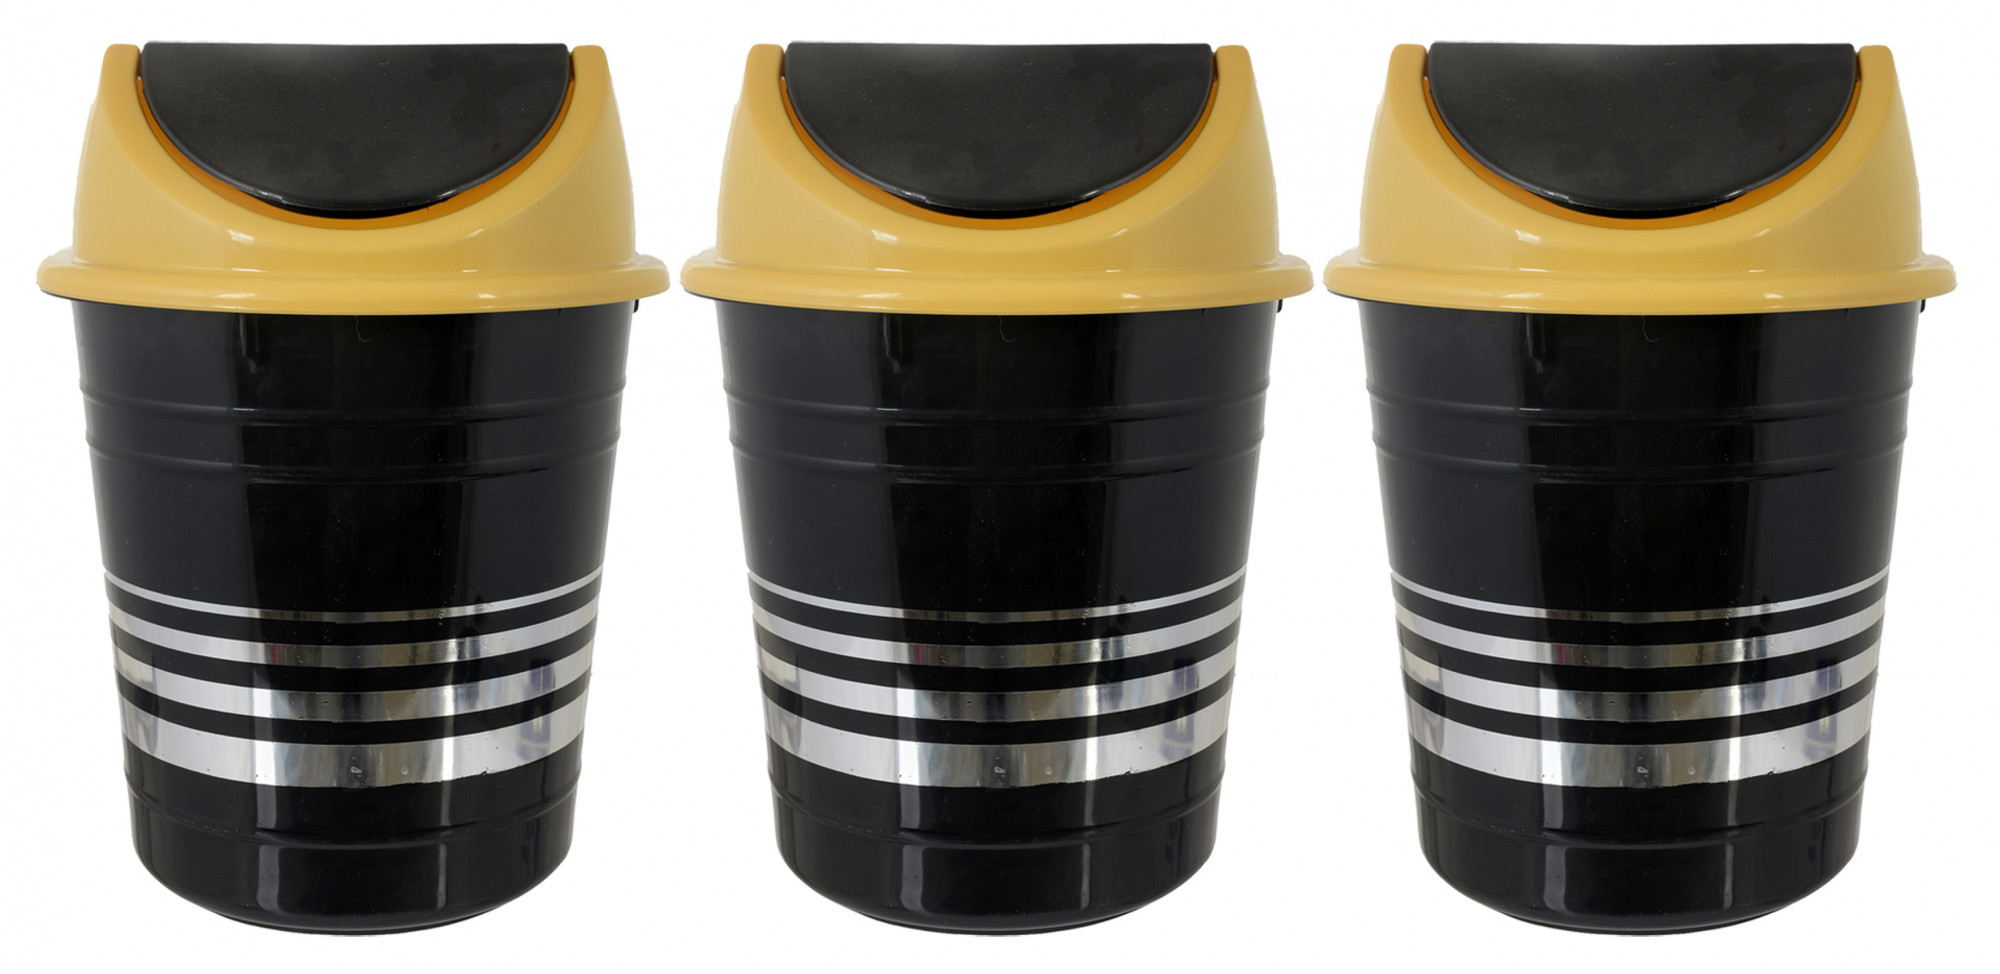 Kuber Industries Plastic Medium Size Swing Dustbin/ Swing Garbage Bin/ Waste Bin, 10 Liters (Black & Yellow)